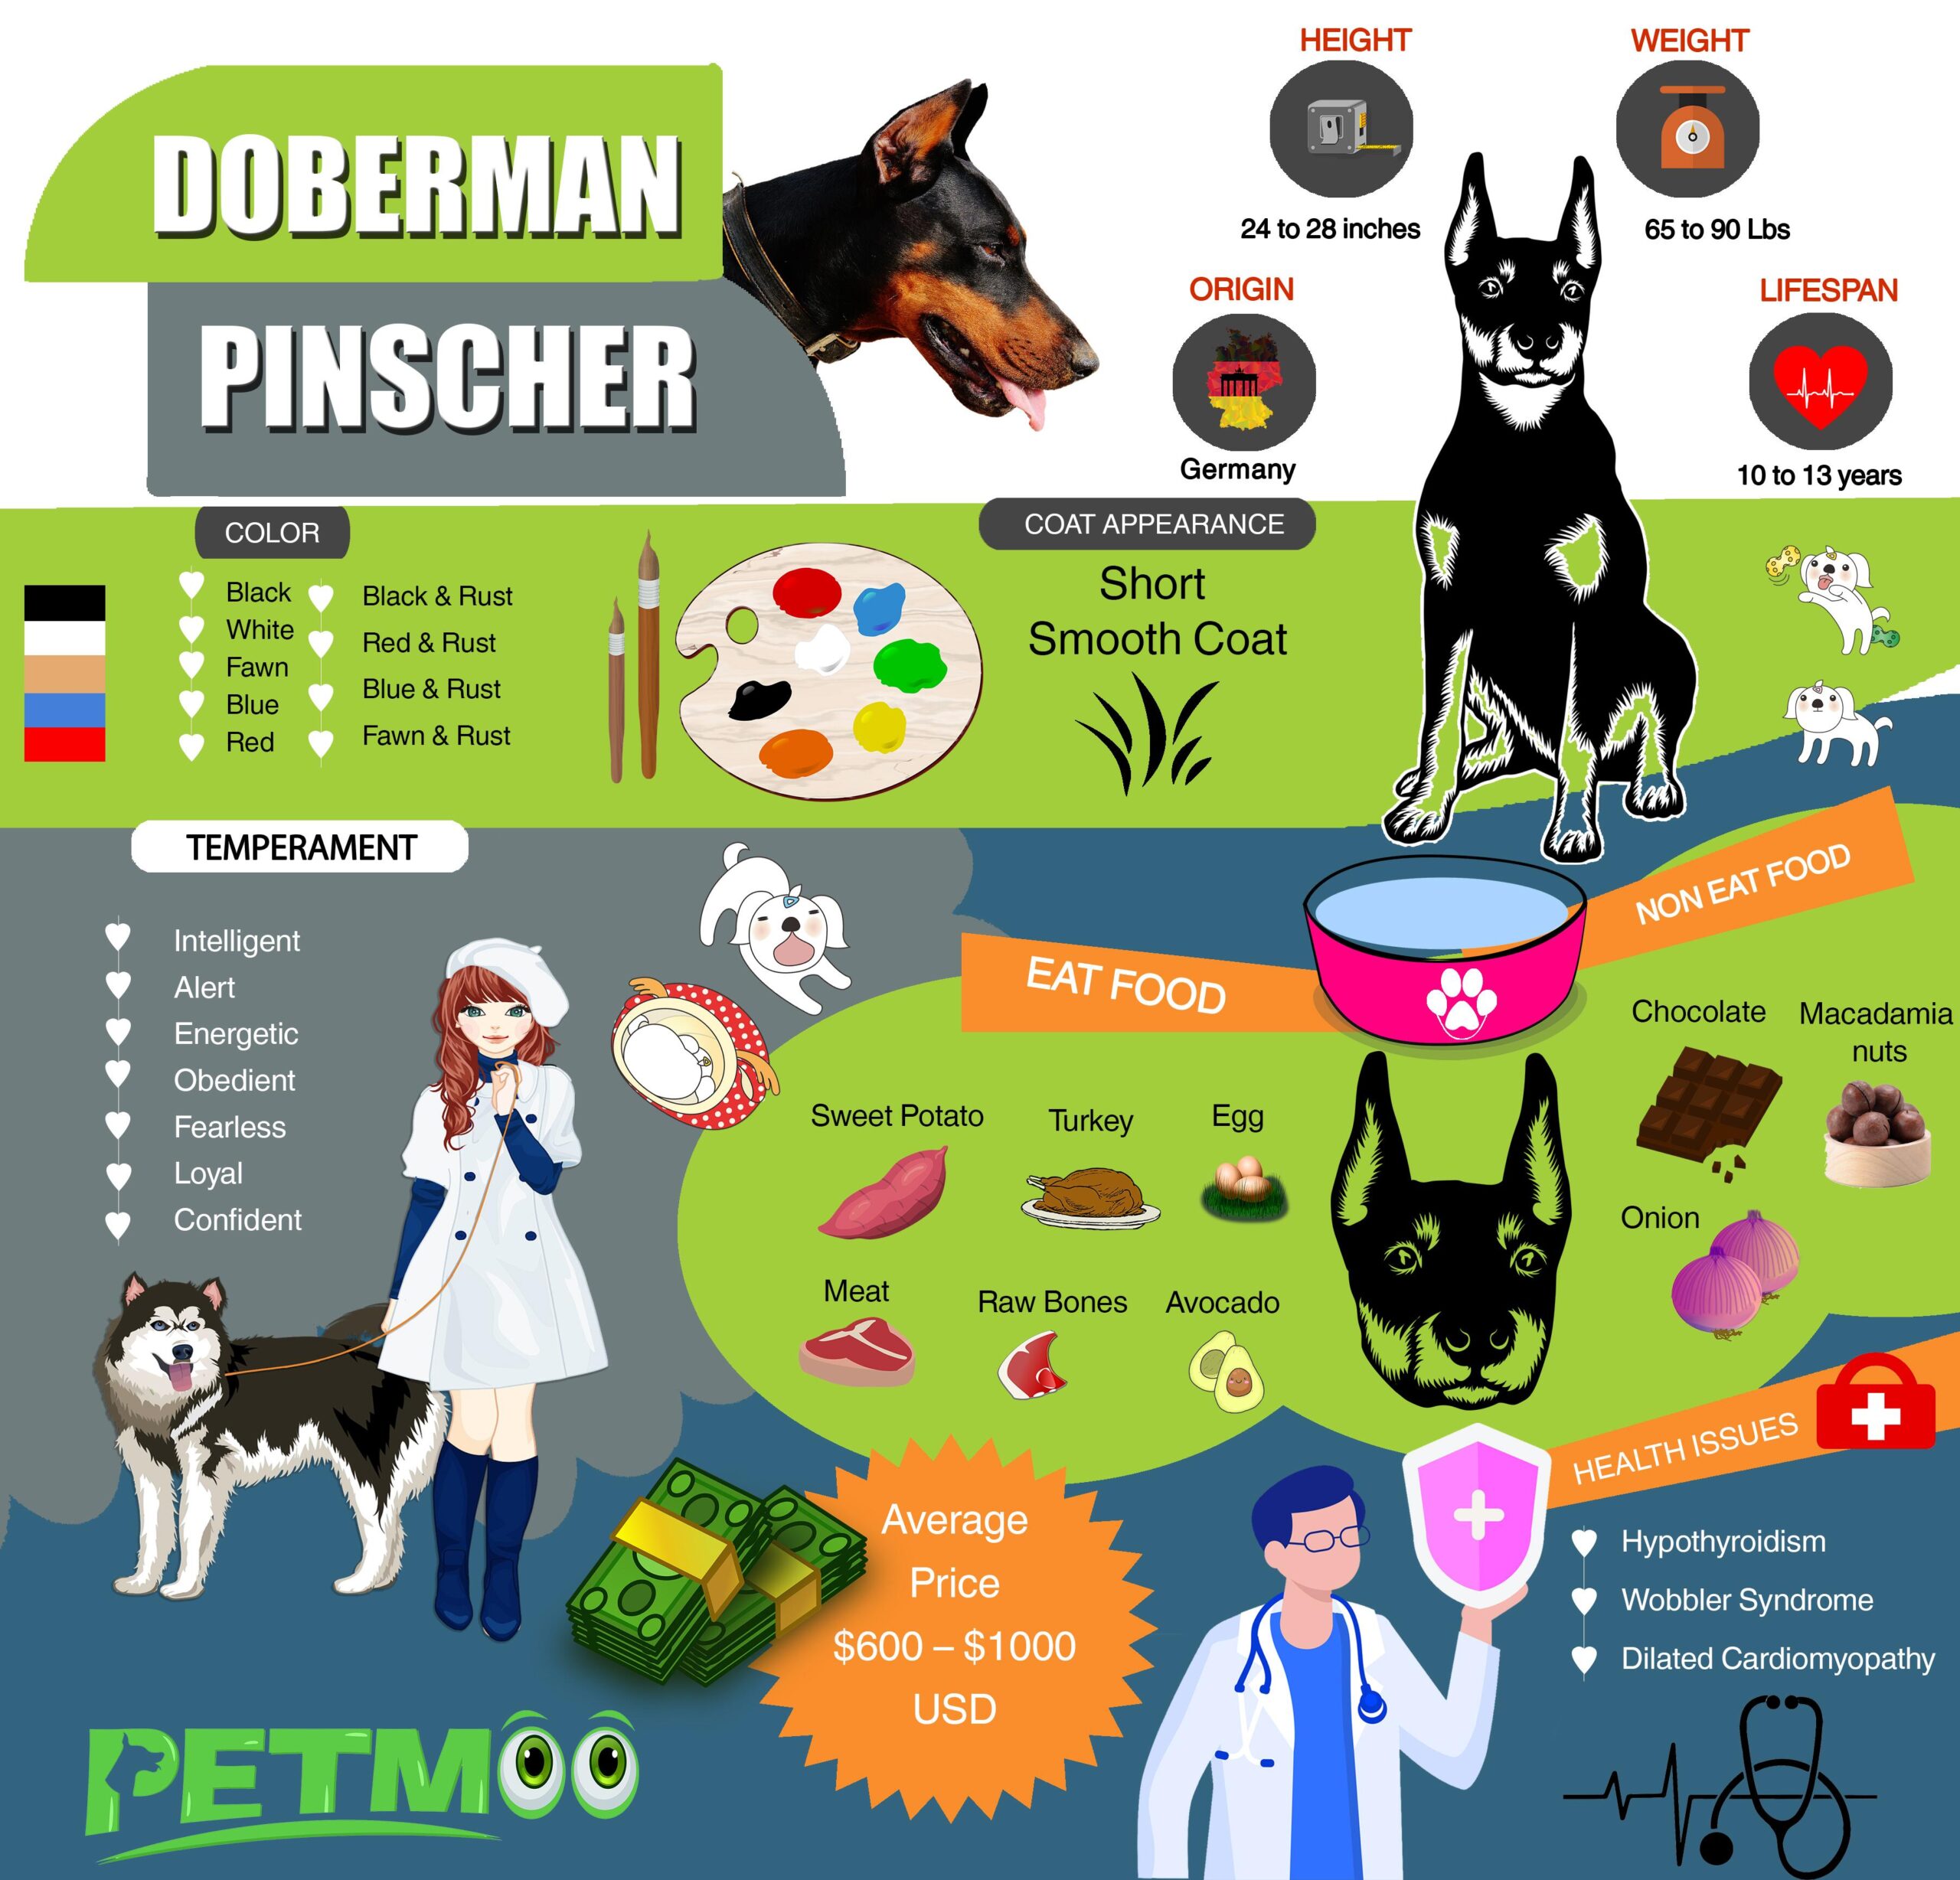 Doberman Pinscher Infographic